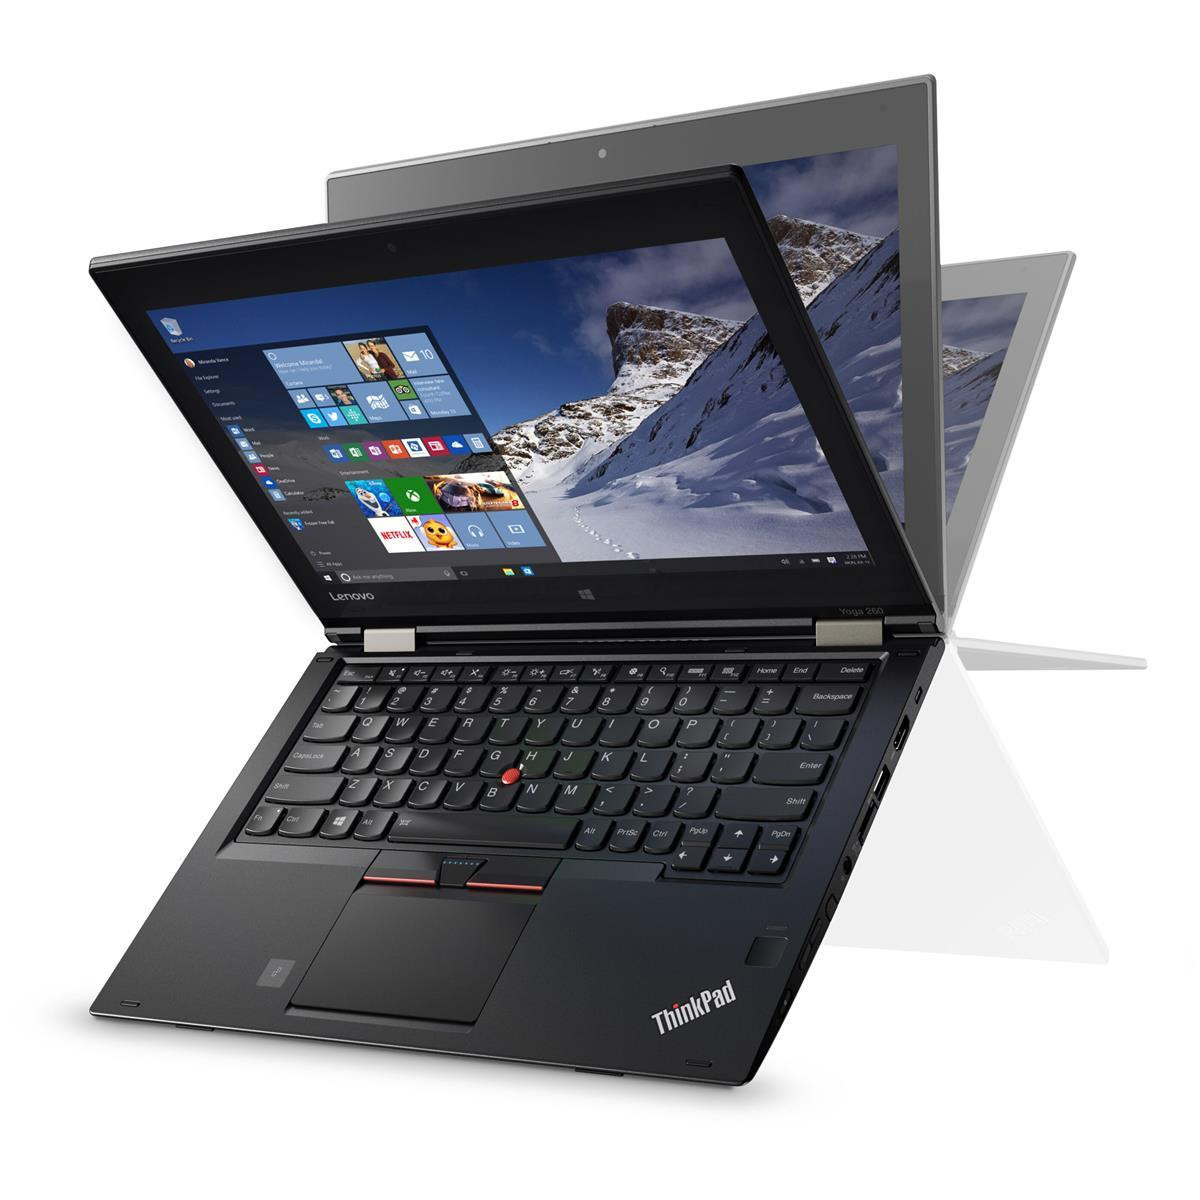 Lenovo ThinkPad Yoga 260 i7-6500U 8GB 256GB SSD FHD W10P WLAN BT CAM FPR Touch